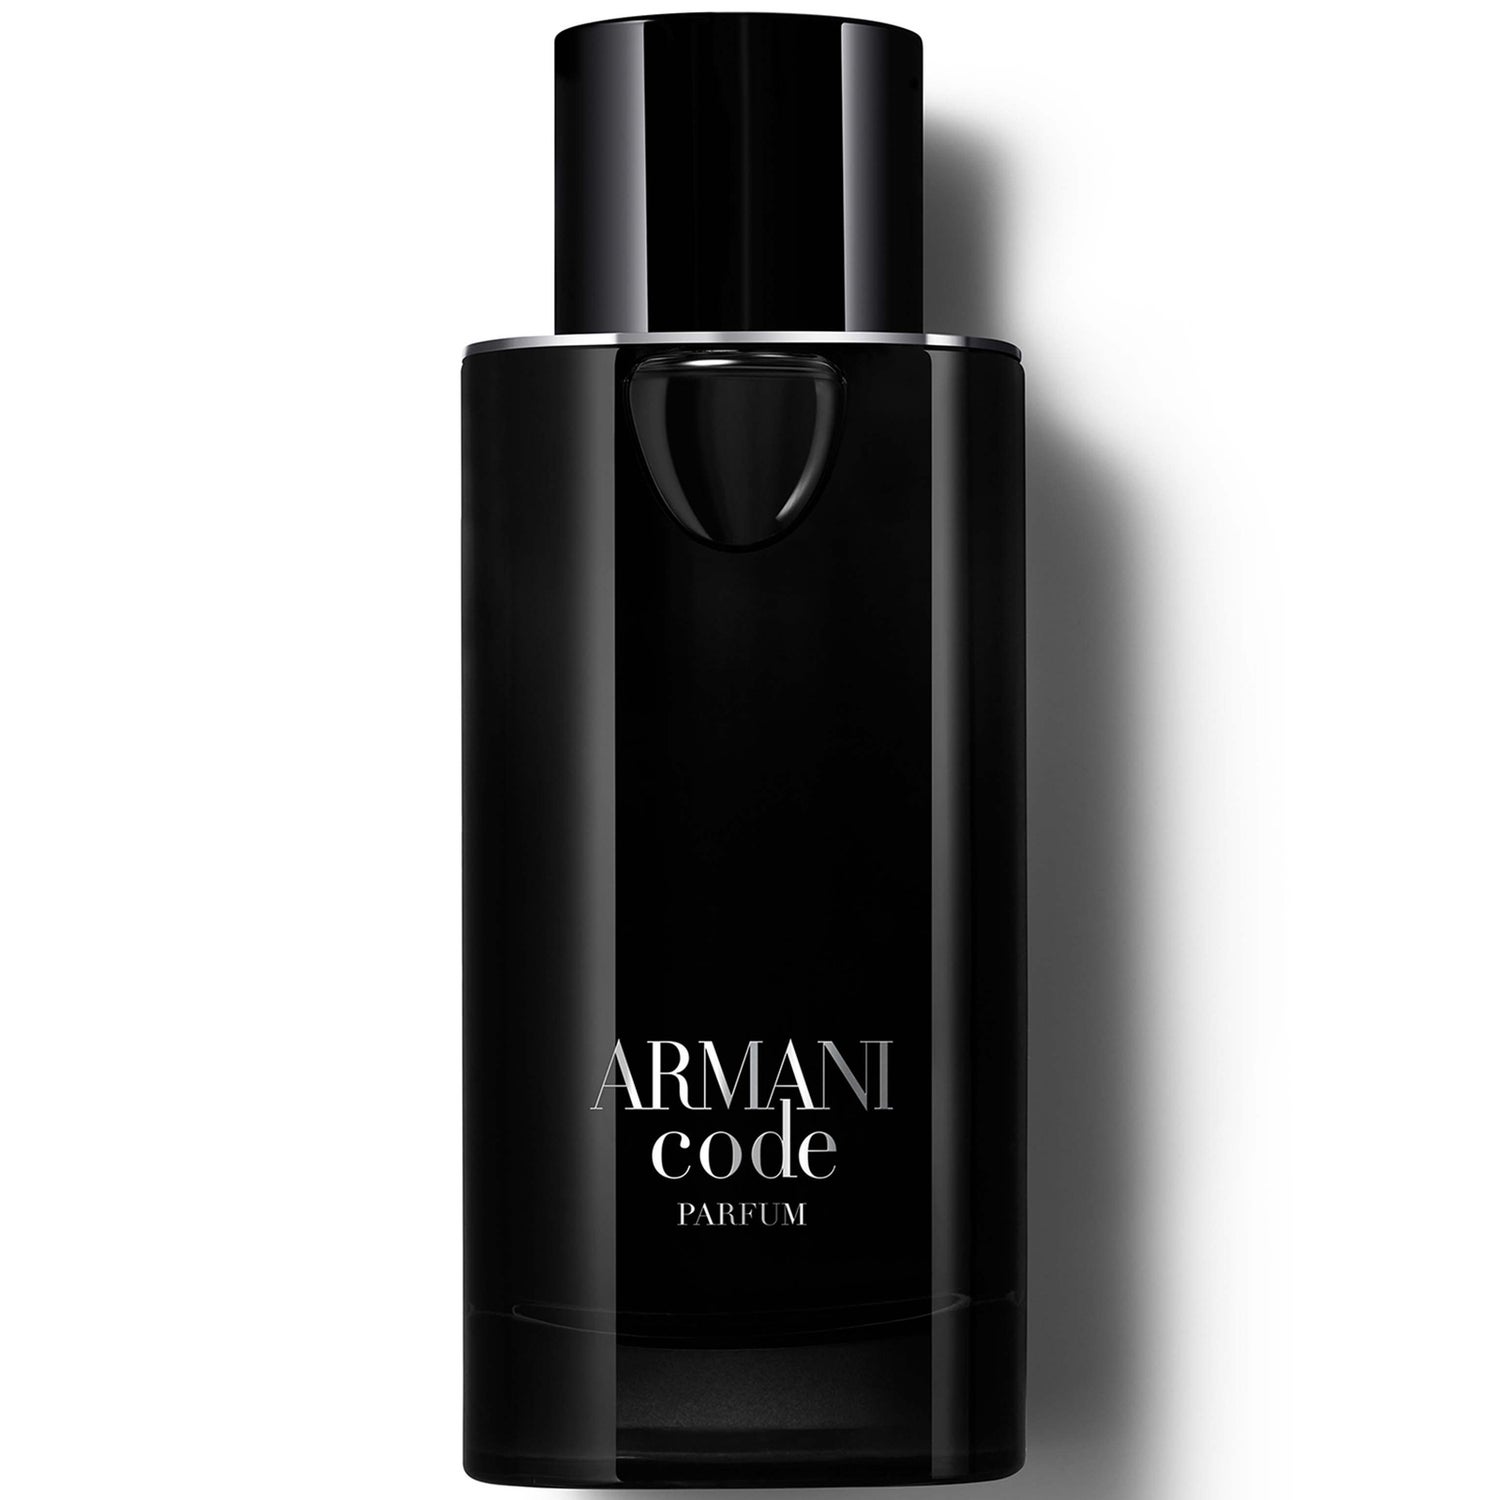 Armani Code Parfum 125ml - LOOKFANTASTIC